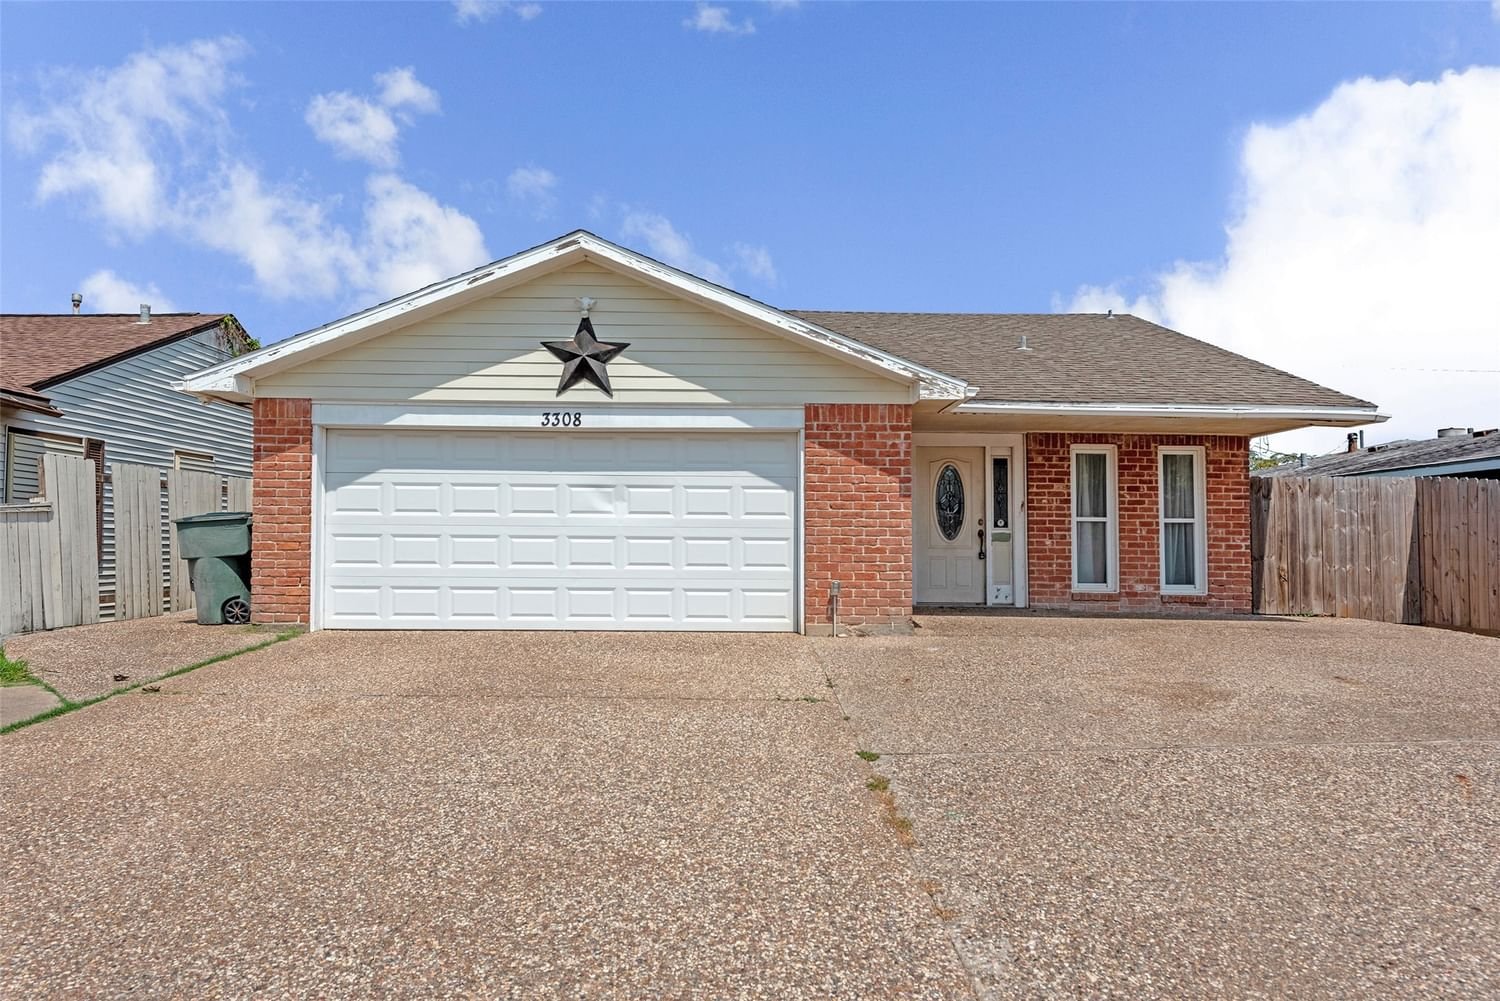 Real estate property located at 3308 Kleinmann, Galveston, Galveston, TX, US